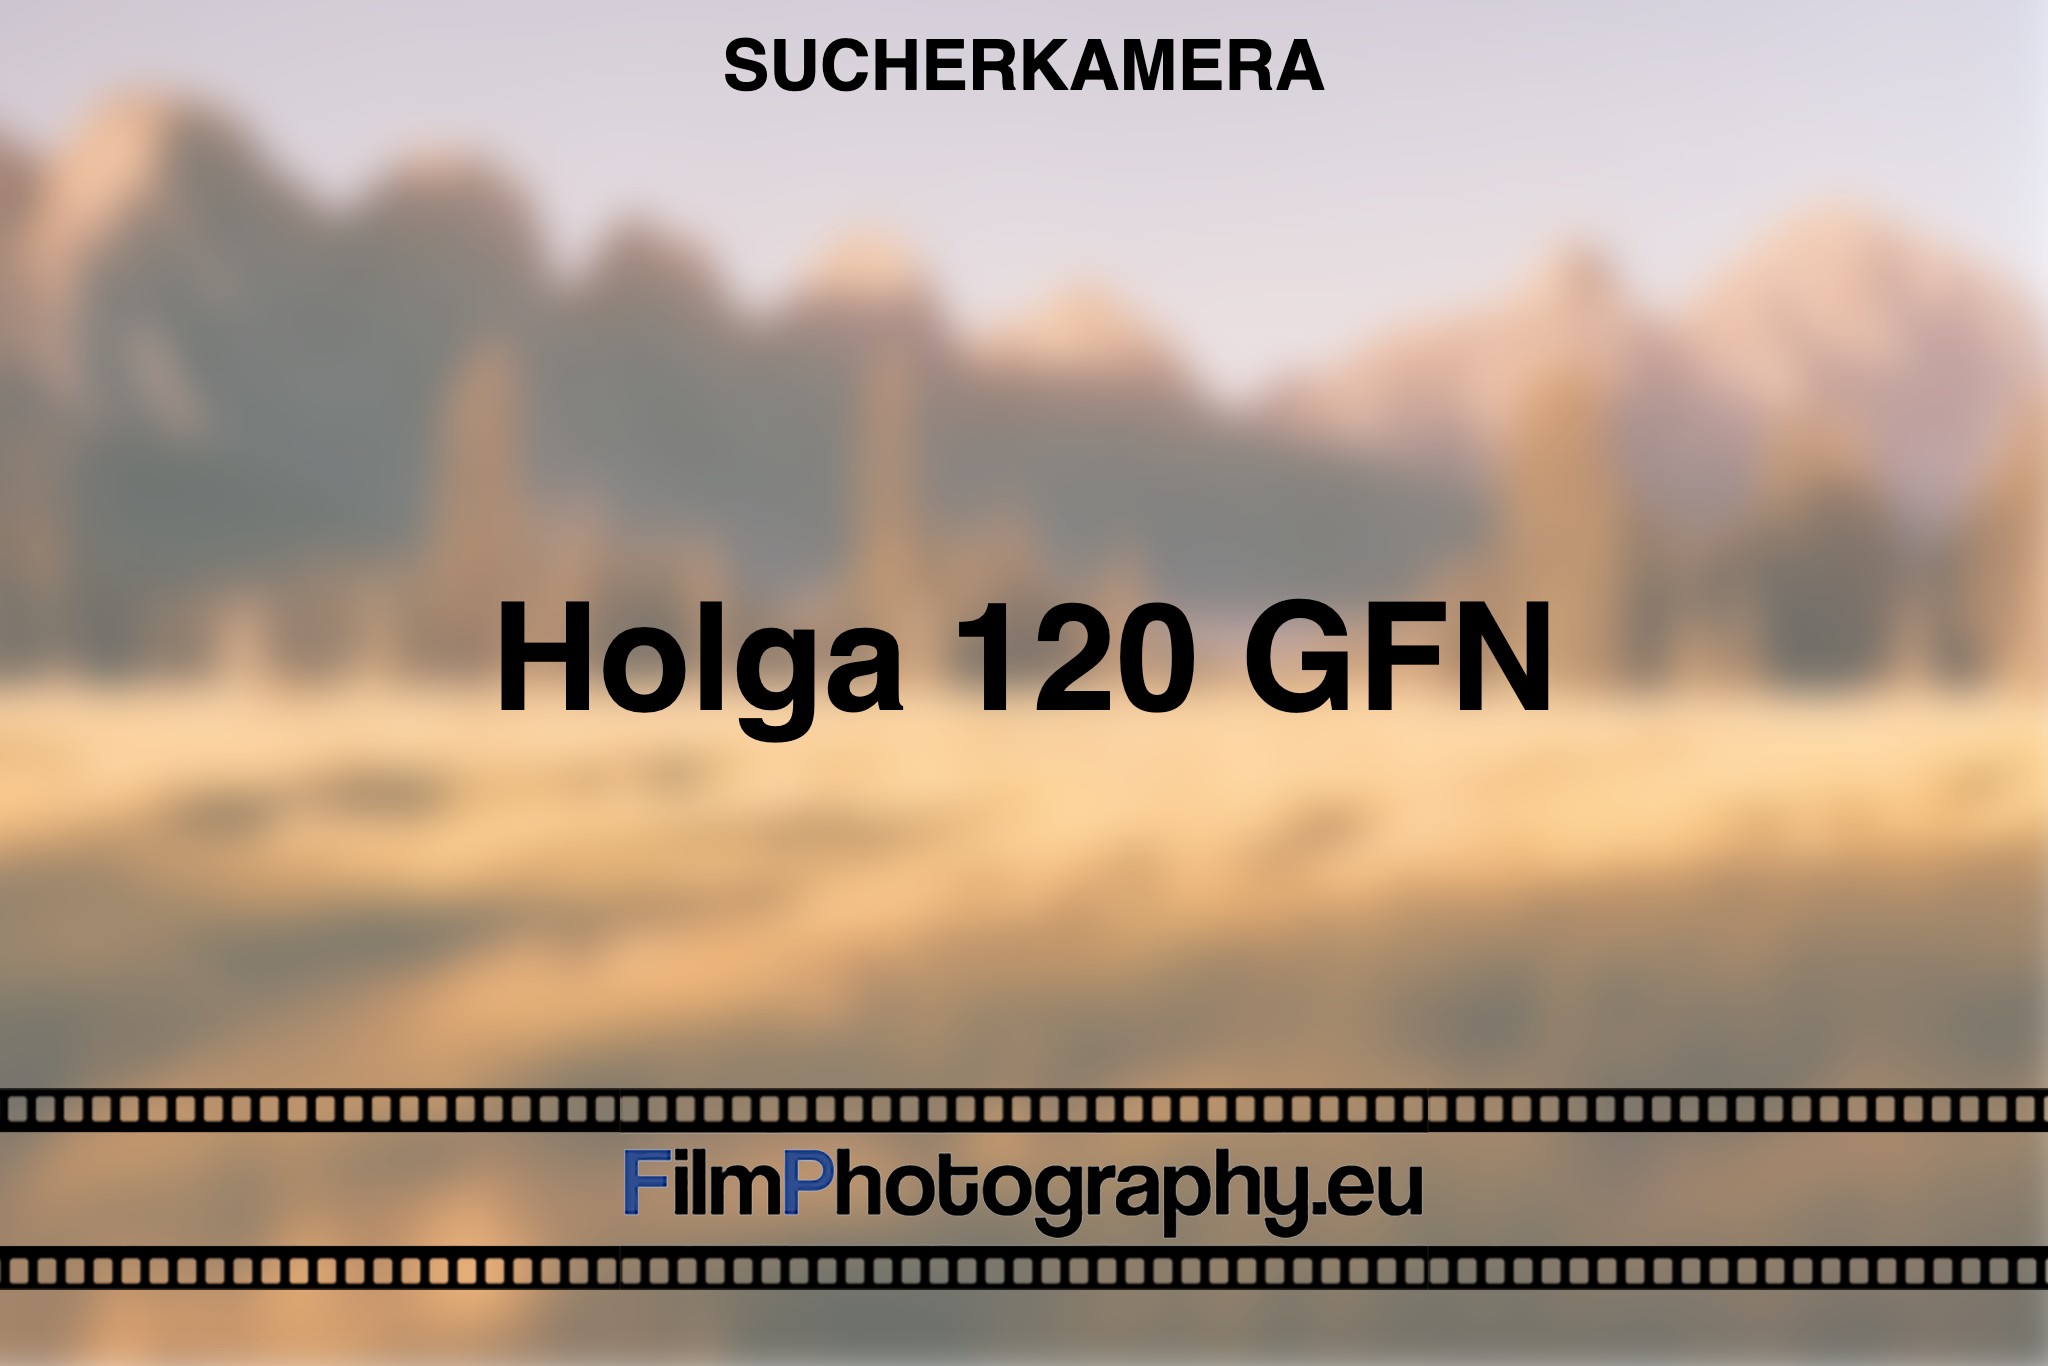 holga-120-gfn-sucherkamera-bnv